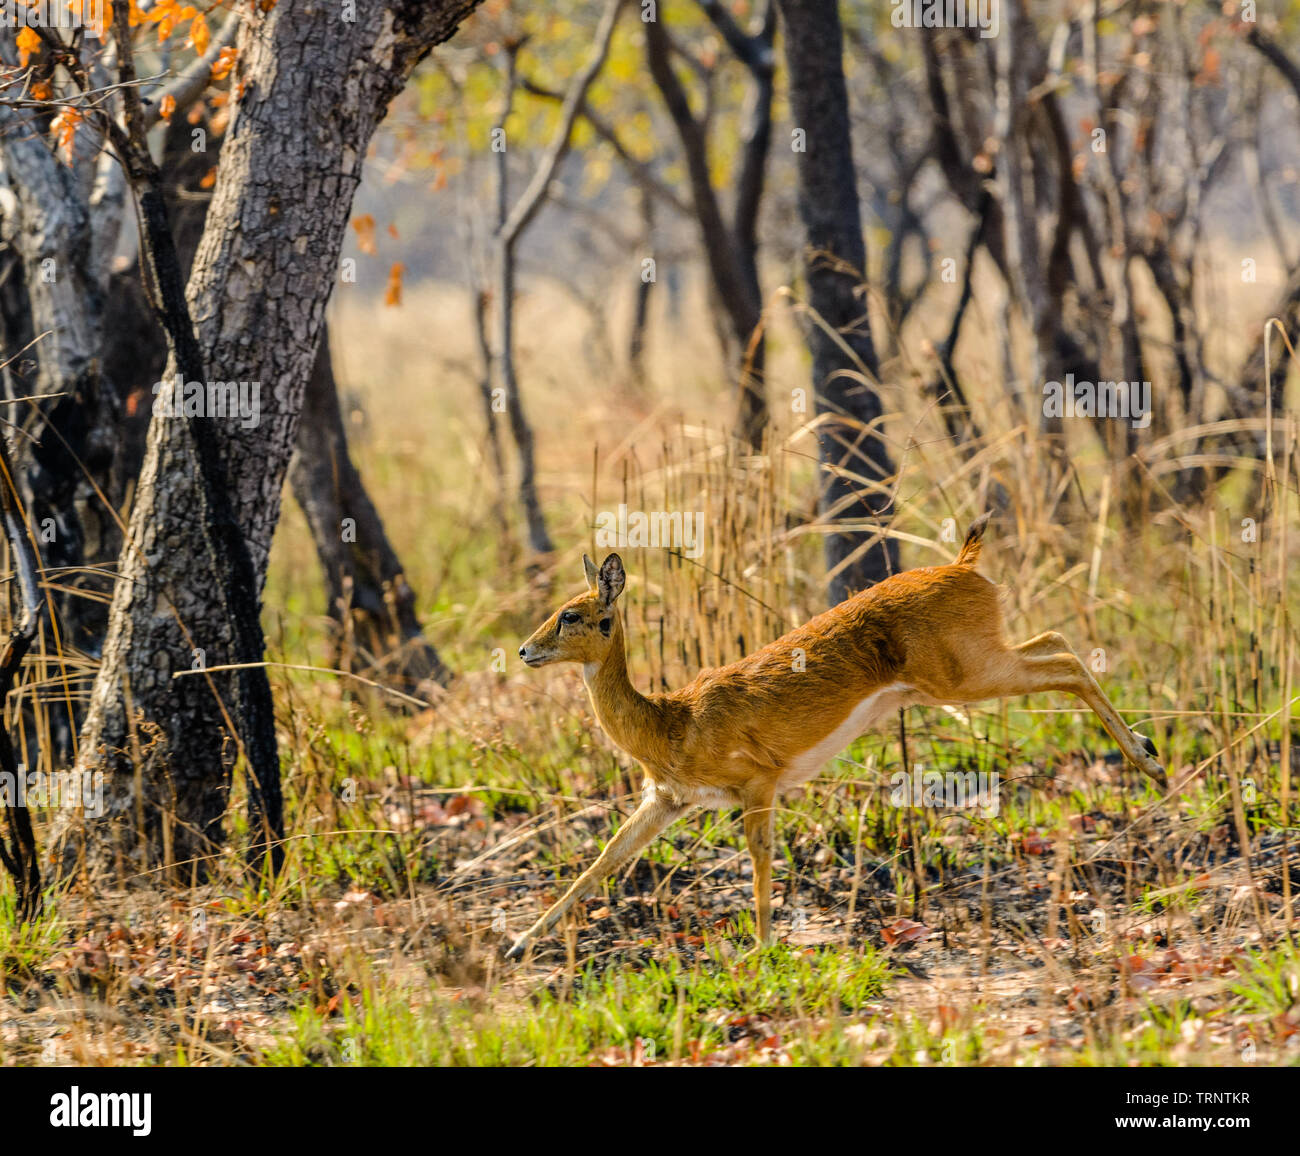 Oribi running through bush in Malawi Stock Photo